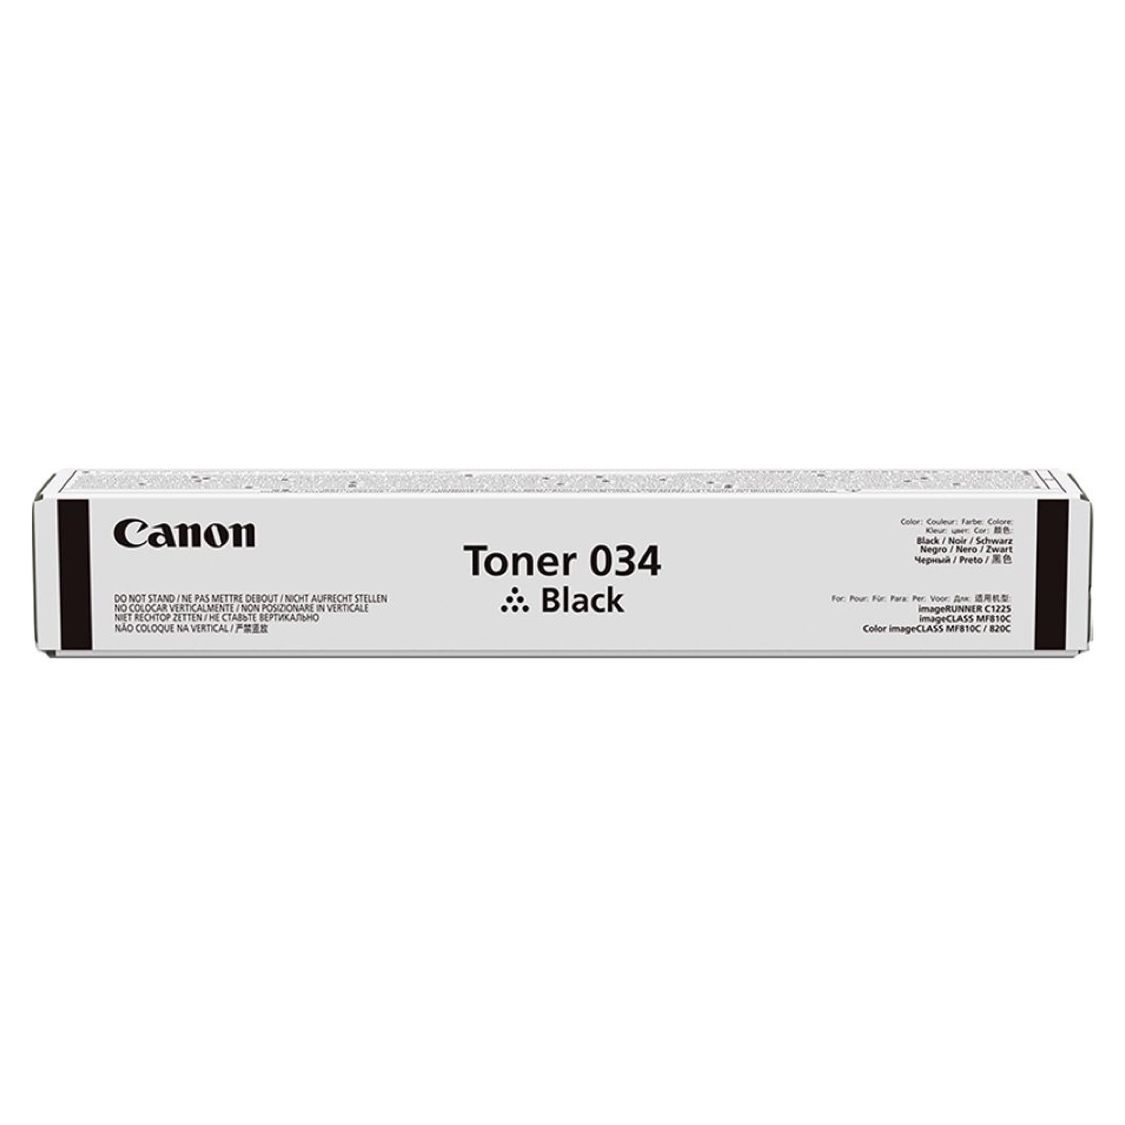 Тонер Canon Toner 034 Black